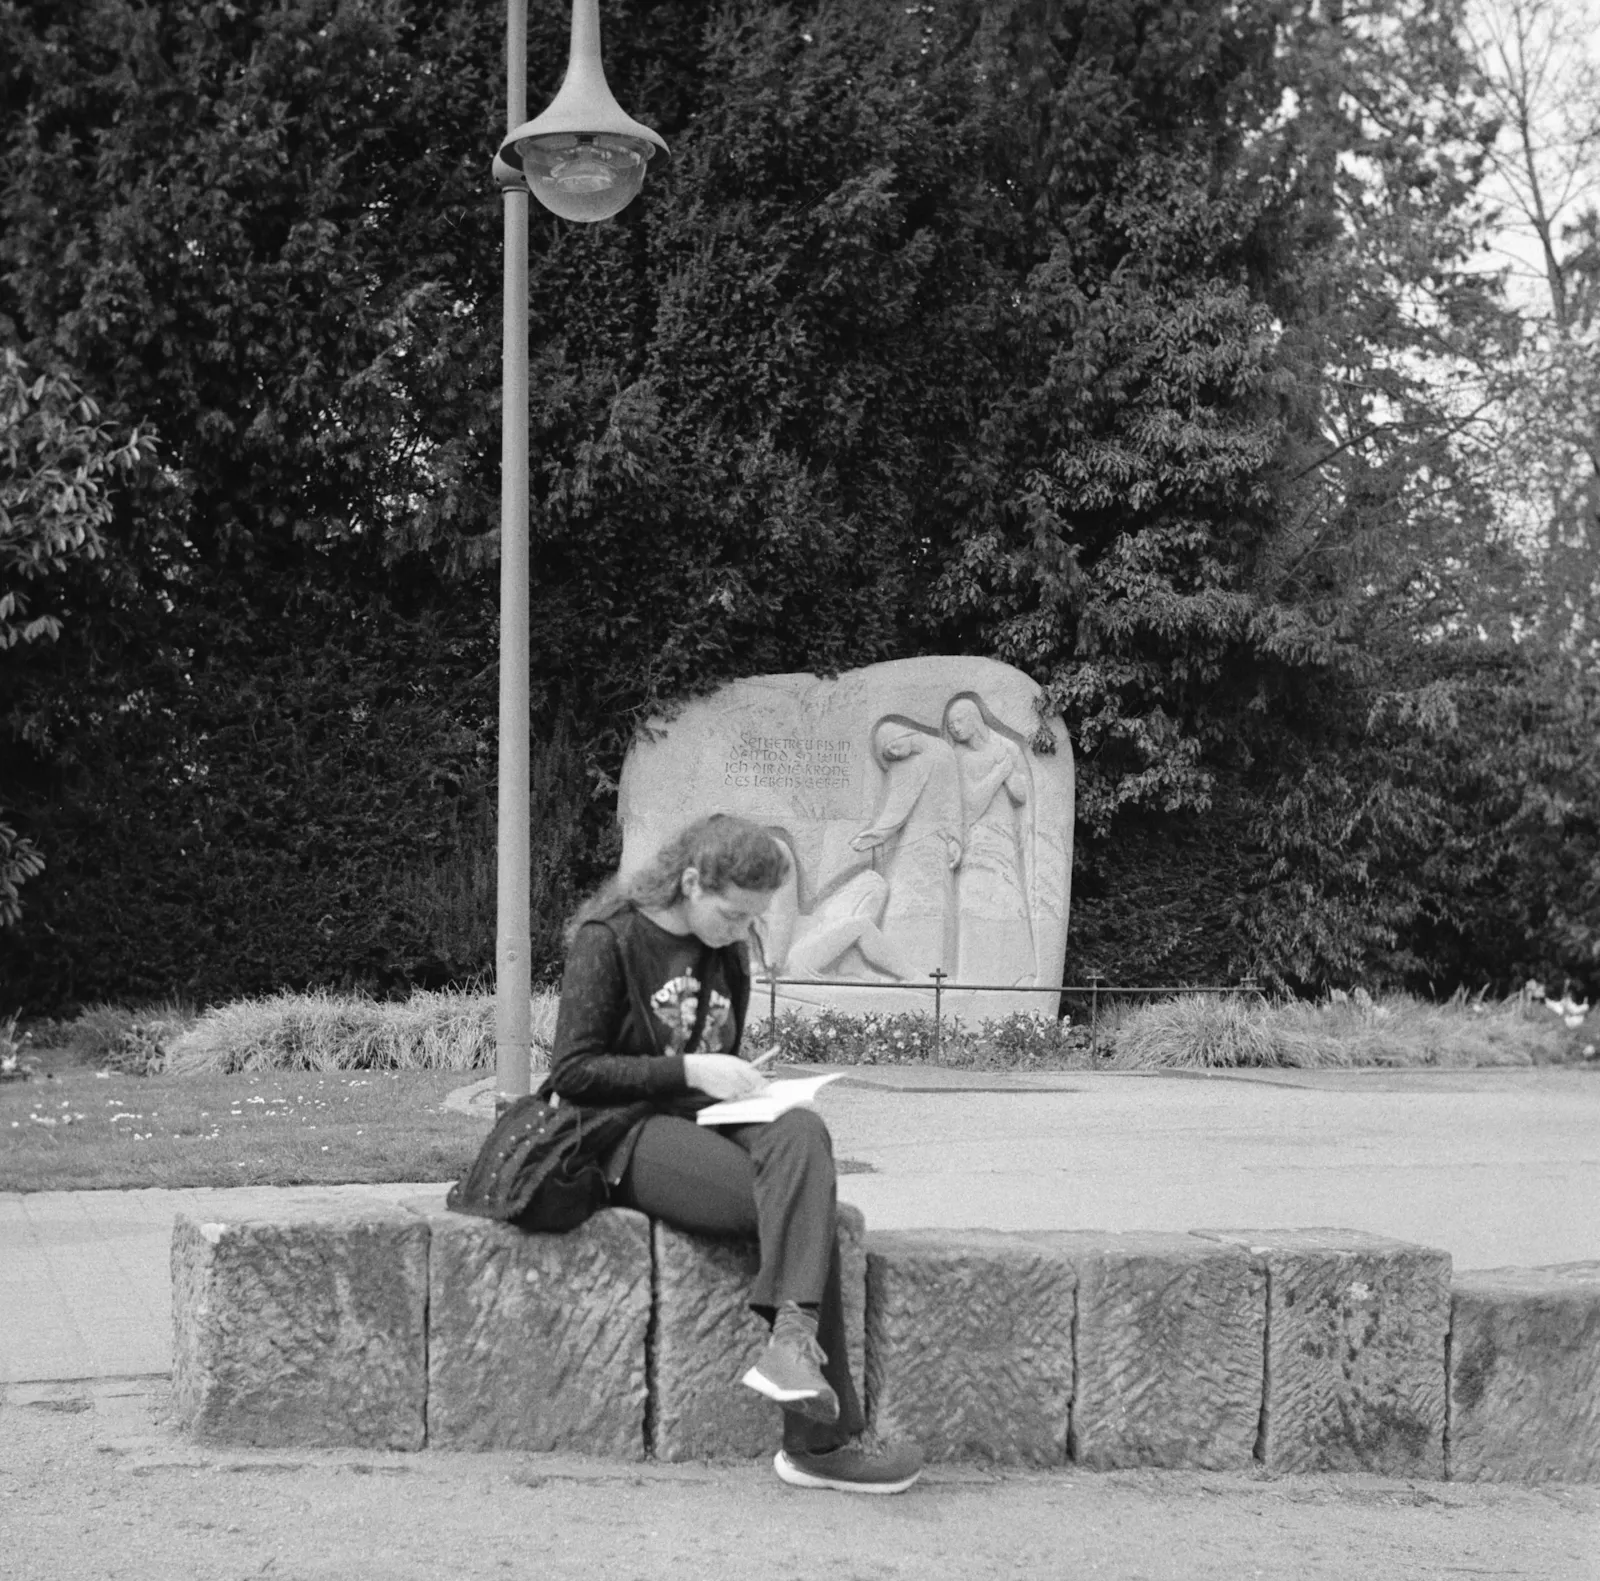 Streetfotografie Bad Dürkheim.
Frau liest auf einem Stein.